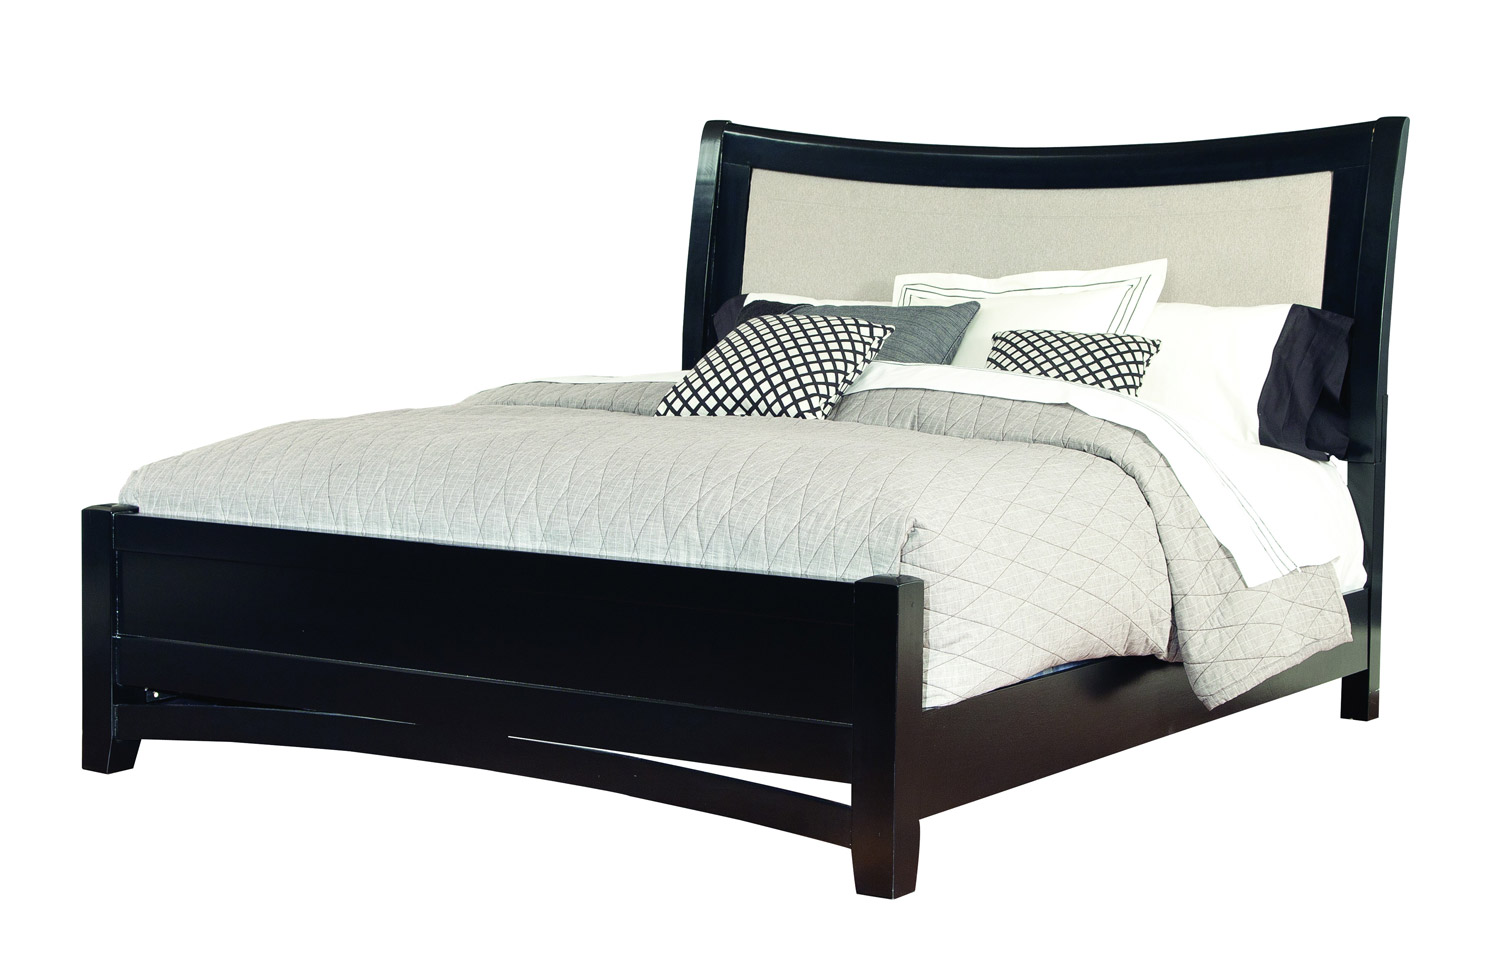 Global Furniture USA Madeline Bed - Black